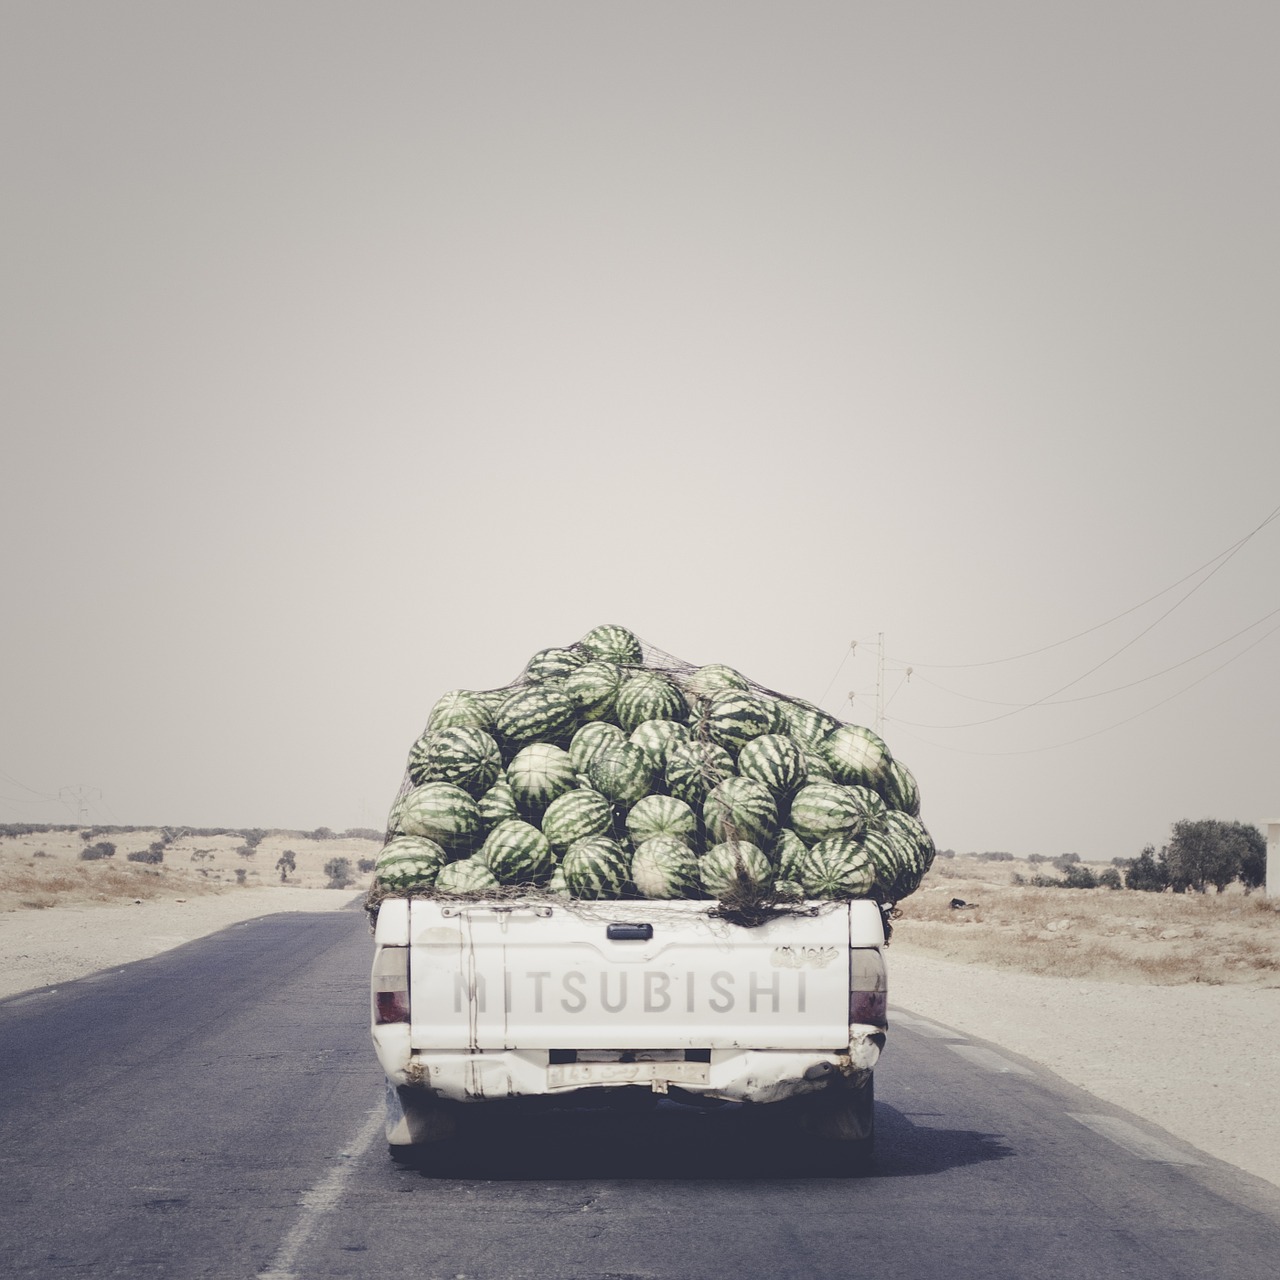 road watermelons van free photo